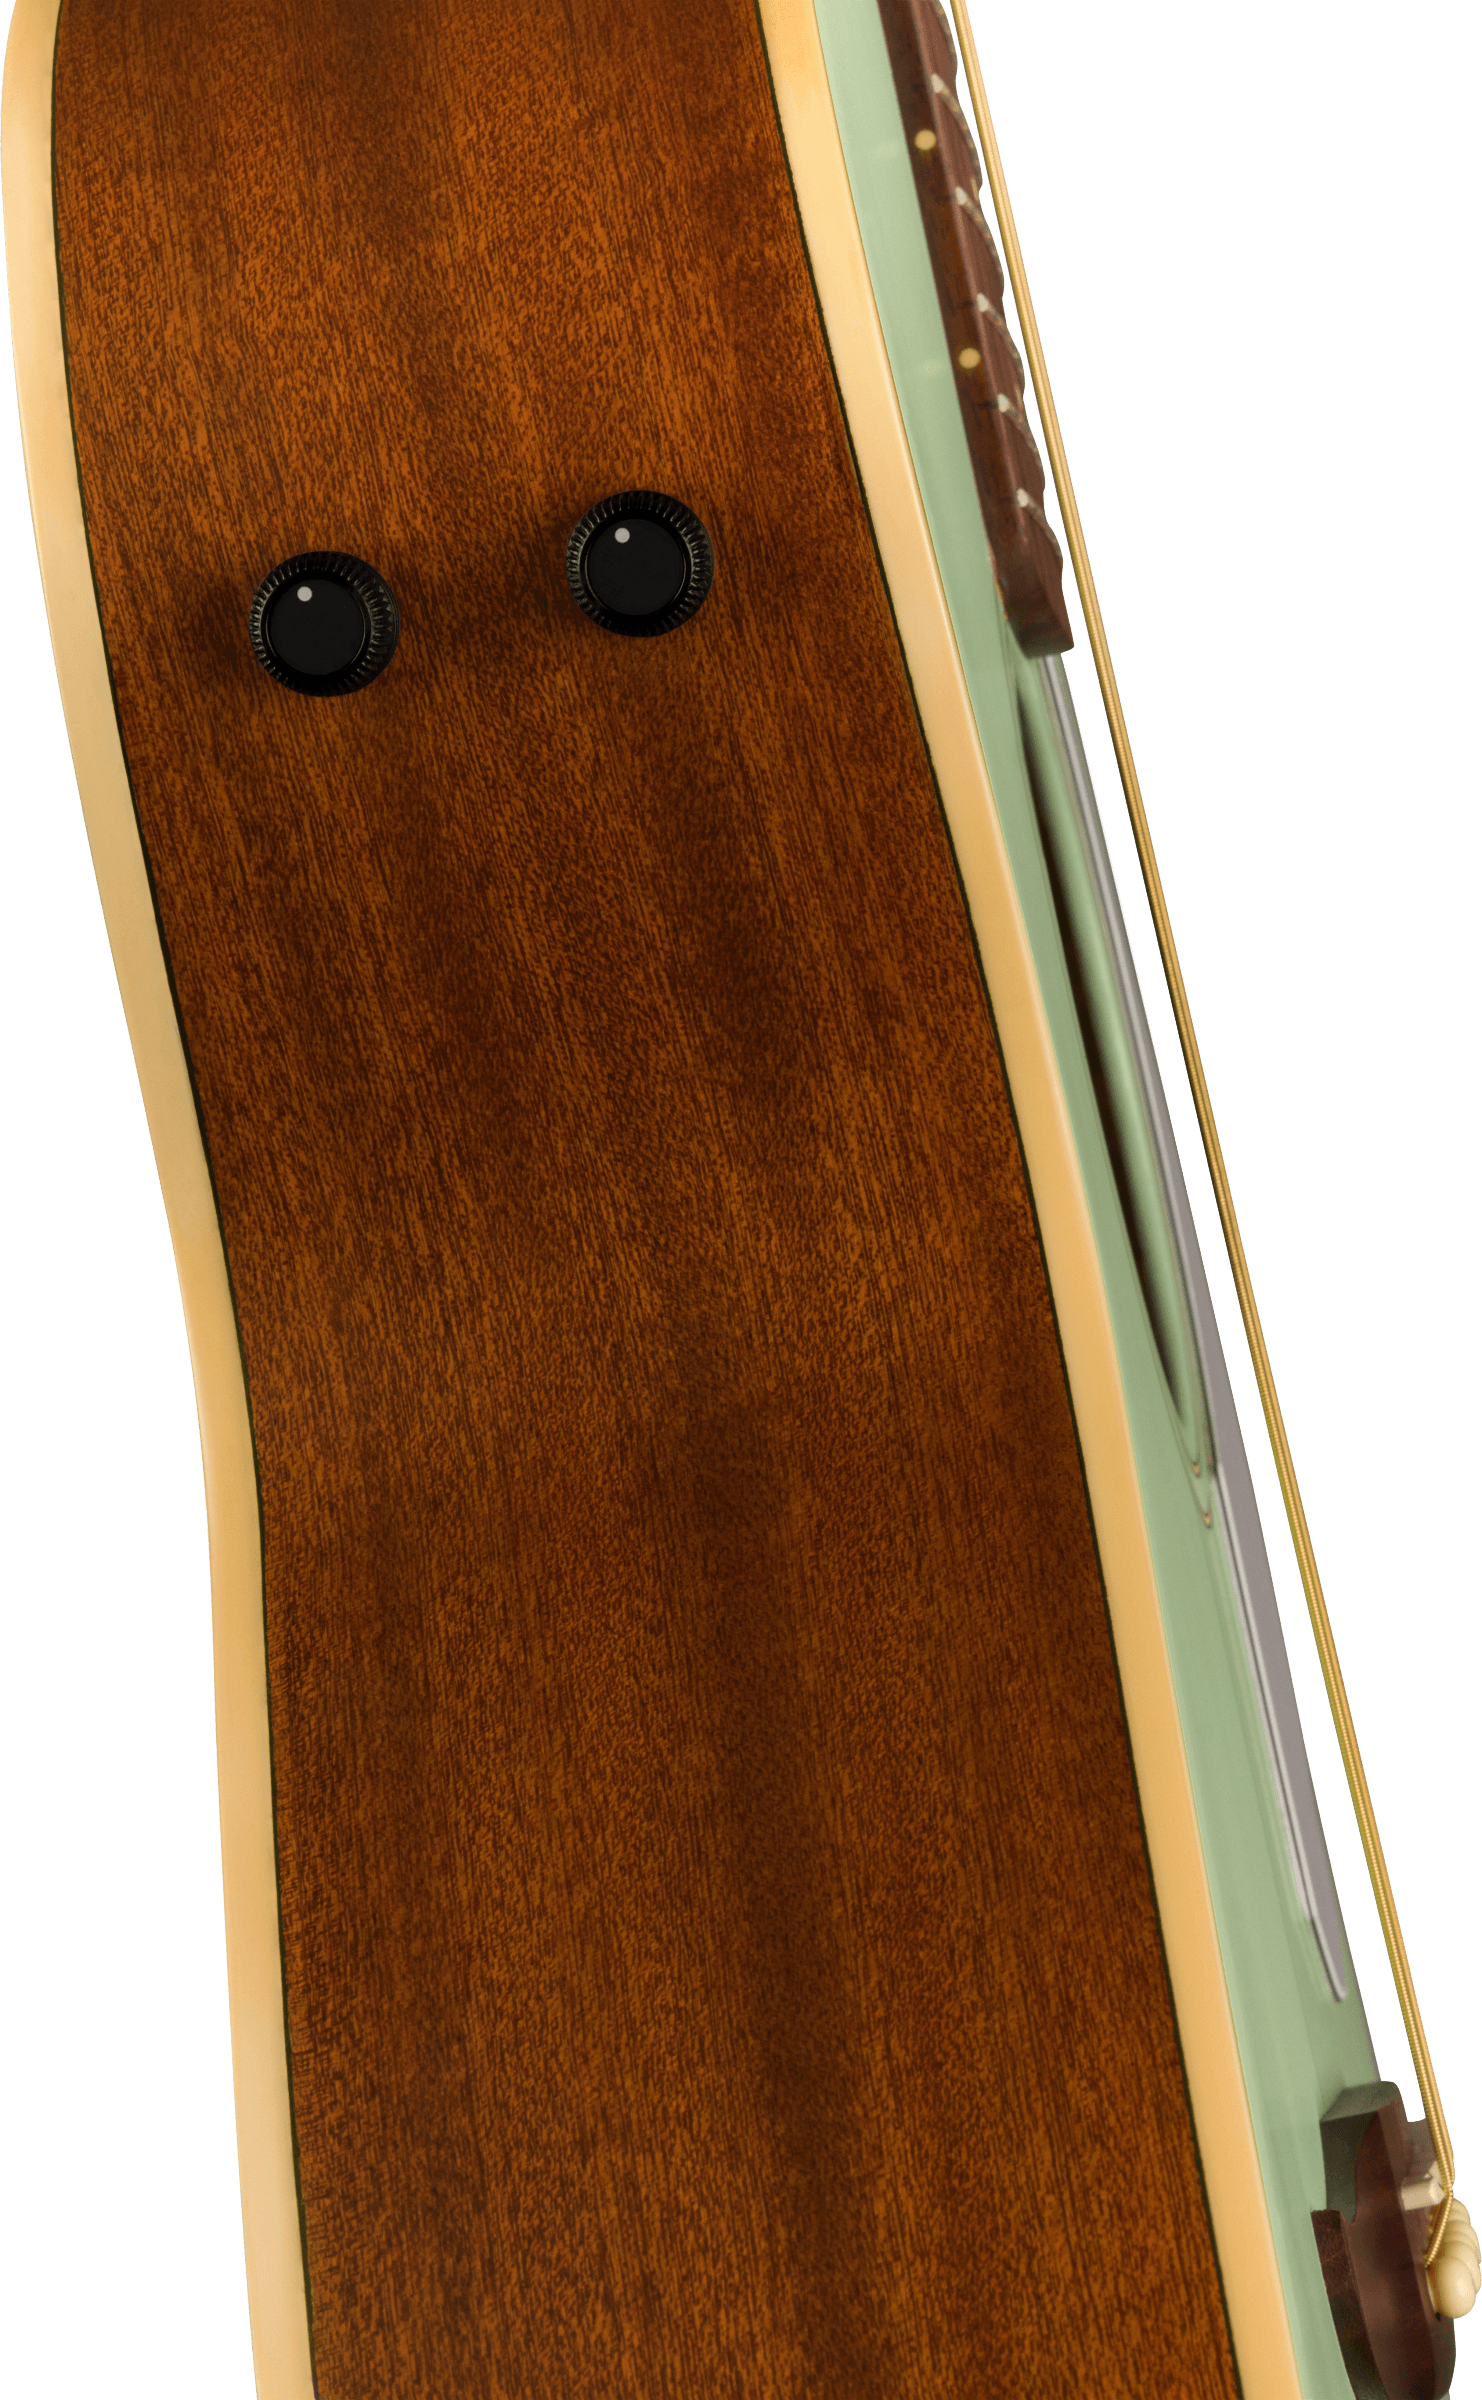 Fender Newport Player Cw Epicea Sapelle - Surf Green - Elektro-akoestische gitaar - Variation 4